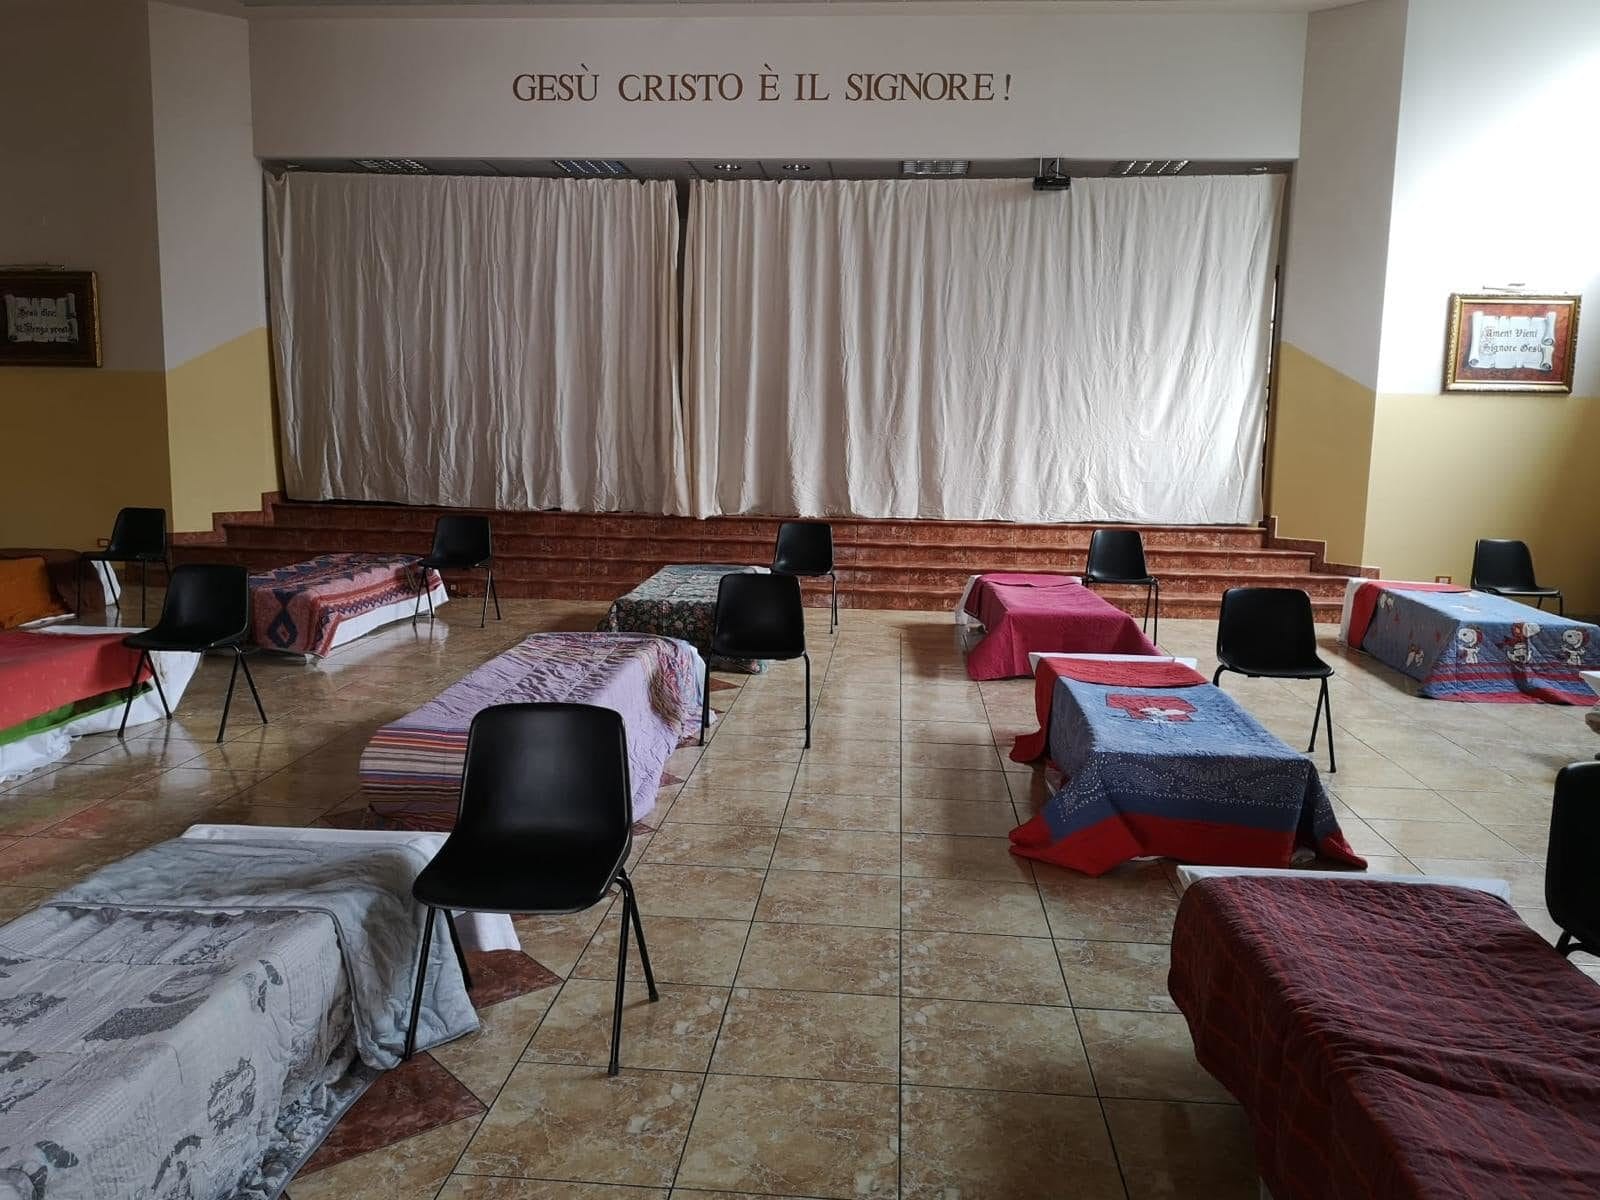 Dans l'église vide, les chaises ont laissé la place à des lits pour héberger les sans-abris